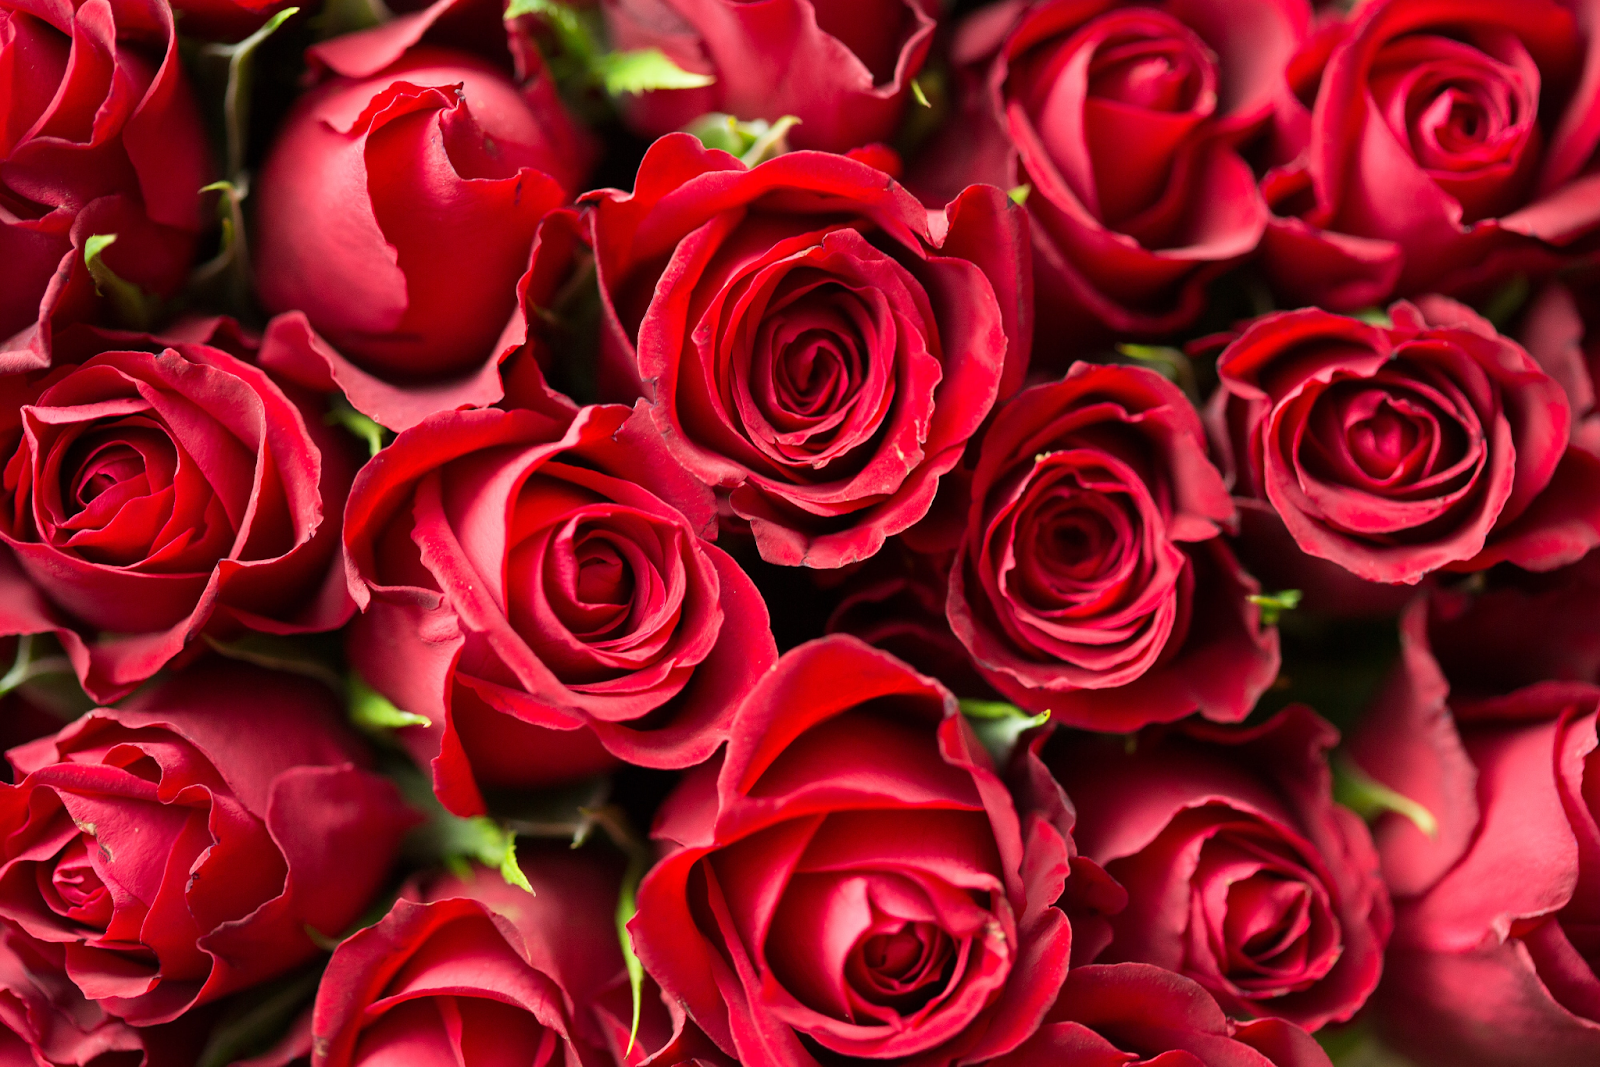 Red Roses (Rosa spp.)